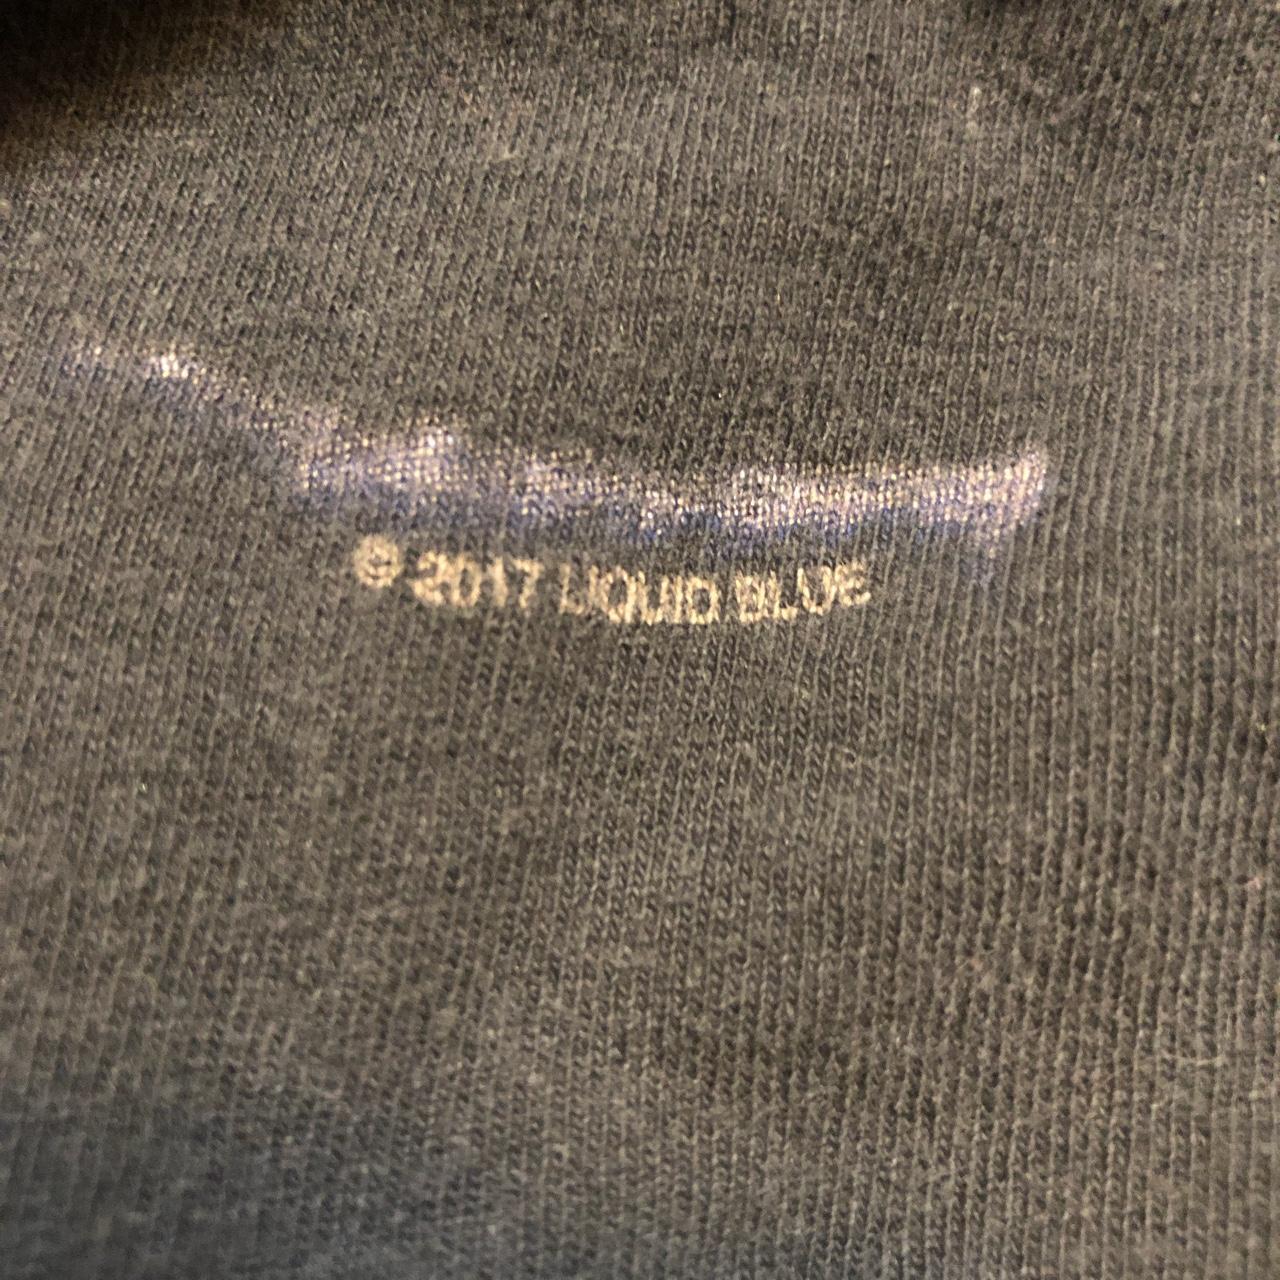 liquid blue Men's Black T-shirt (3)